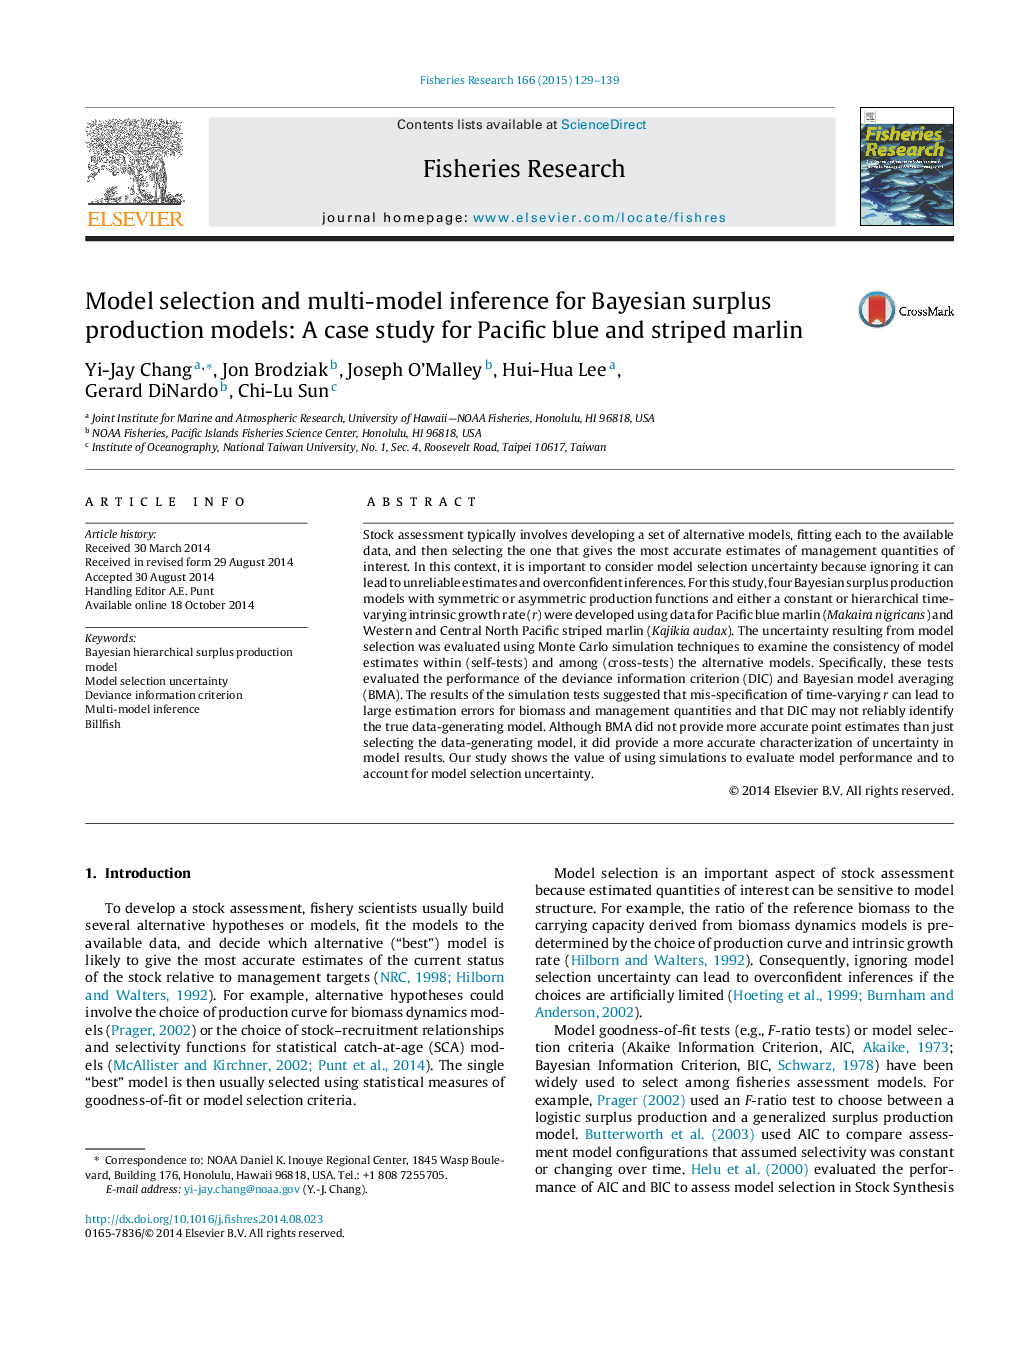 انتخاب مدل و استنتاج چند مدل برای مدل های تولید مازاد بیزی: یک مطالعه مورد برای مارلین آبی و راه آبی اقیانوس آرام 